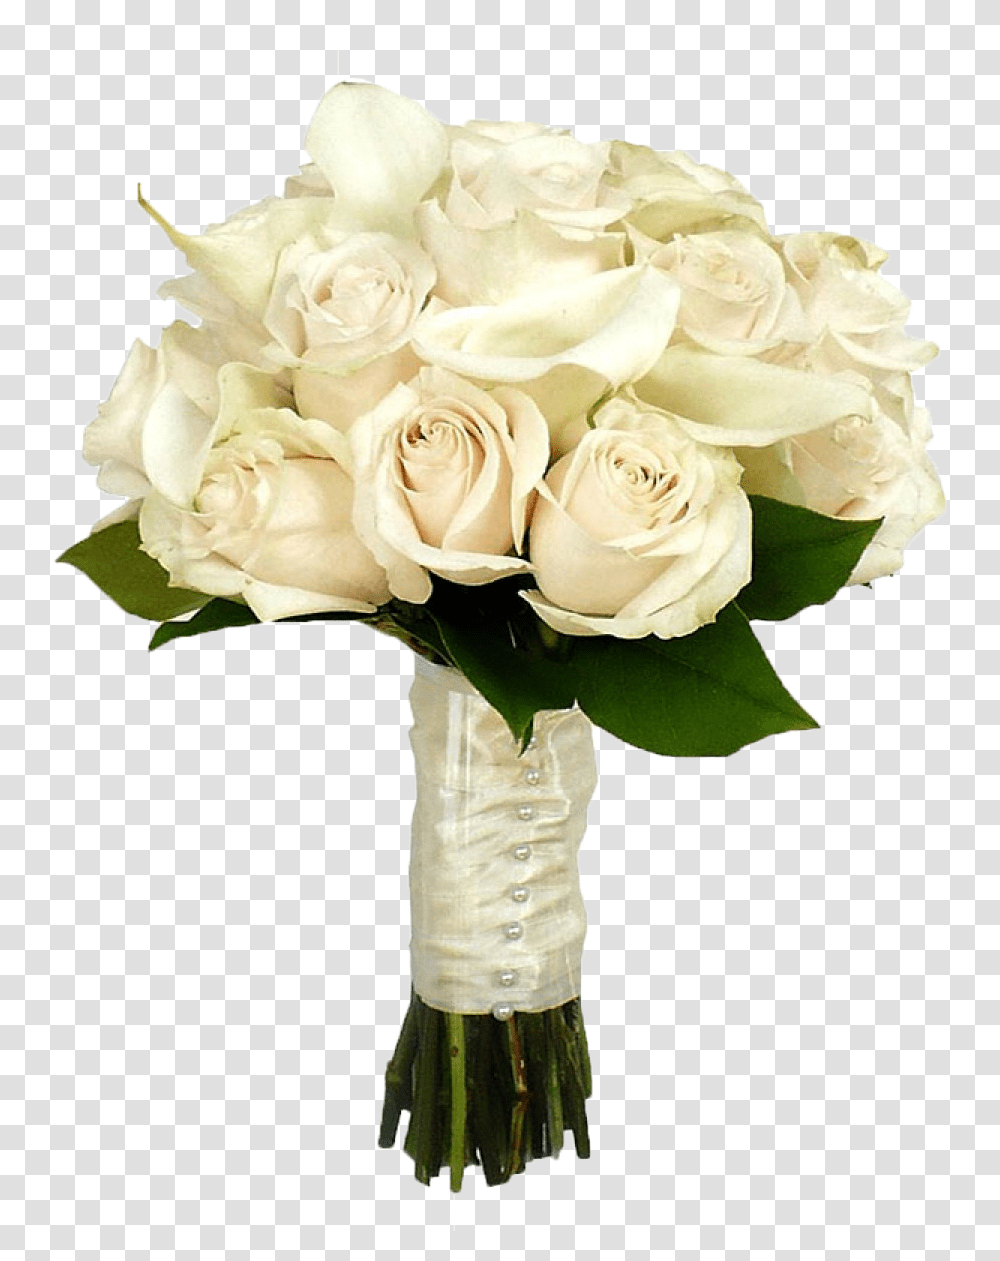 Bouquet Of Roses Bouquet Of Flowers White Roses, Plant, Flower Bouquet, Flower Arrangement, Blossom Transparent Png